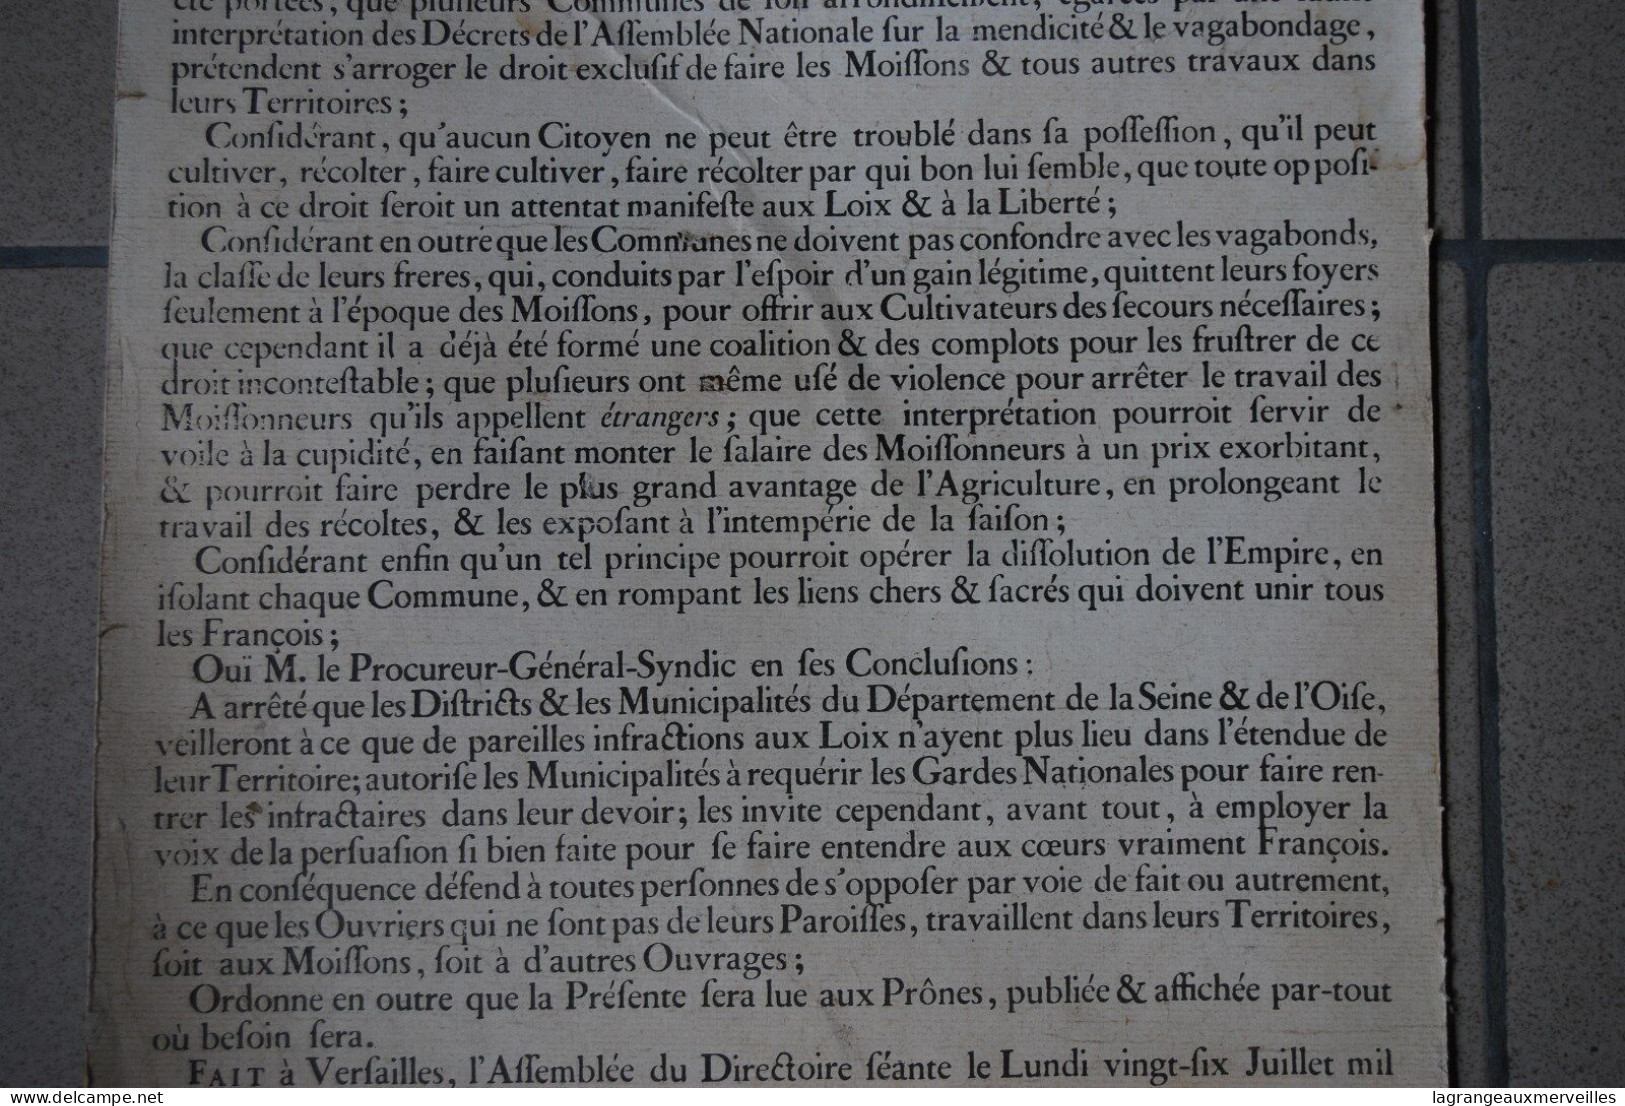 A1 Affiche - Document 1790 - France - Mendicité - Administration - Proclamation - Afiches